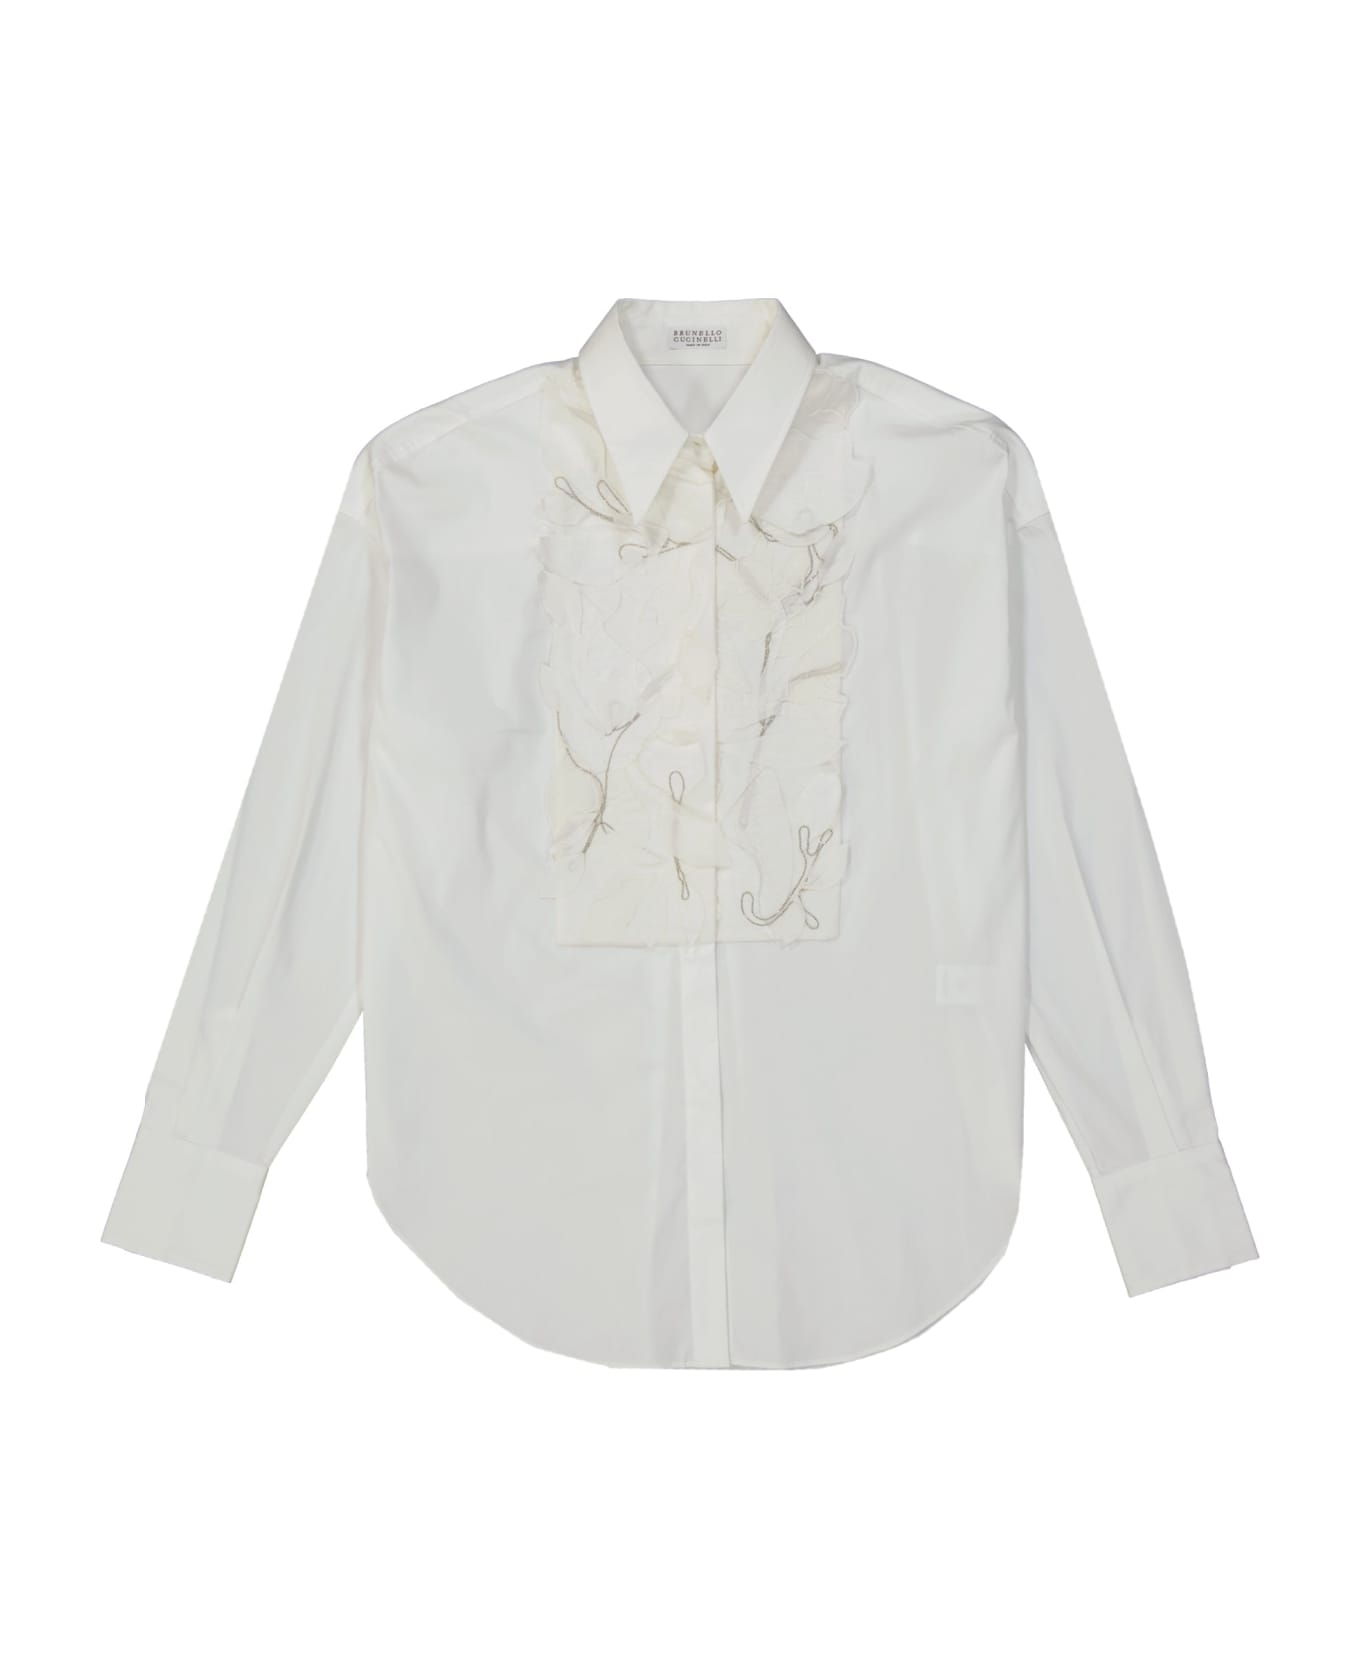 Brunello Cucinelli Cotton Shirt - White ブラウス